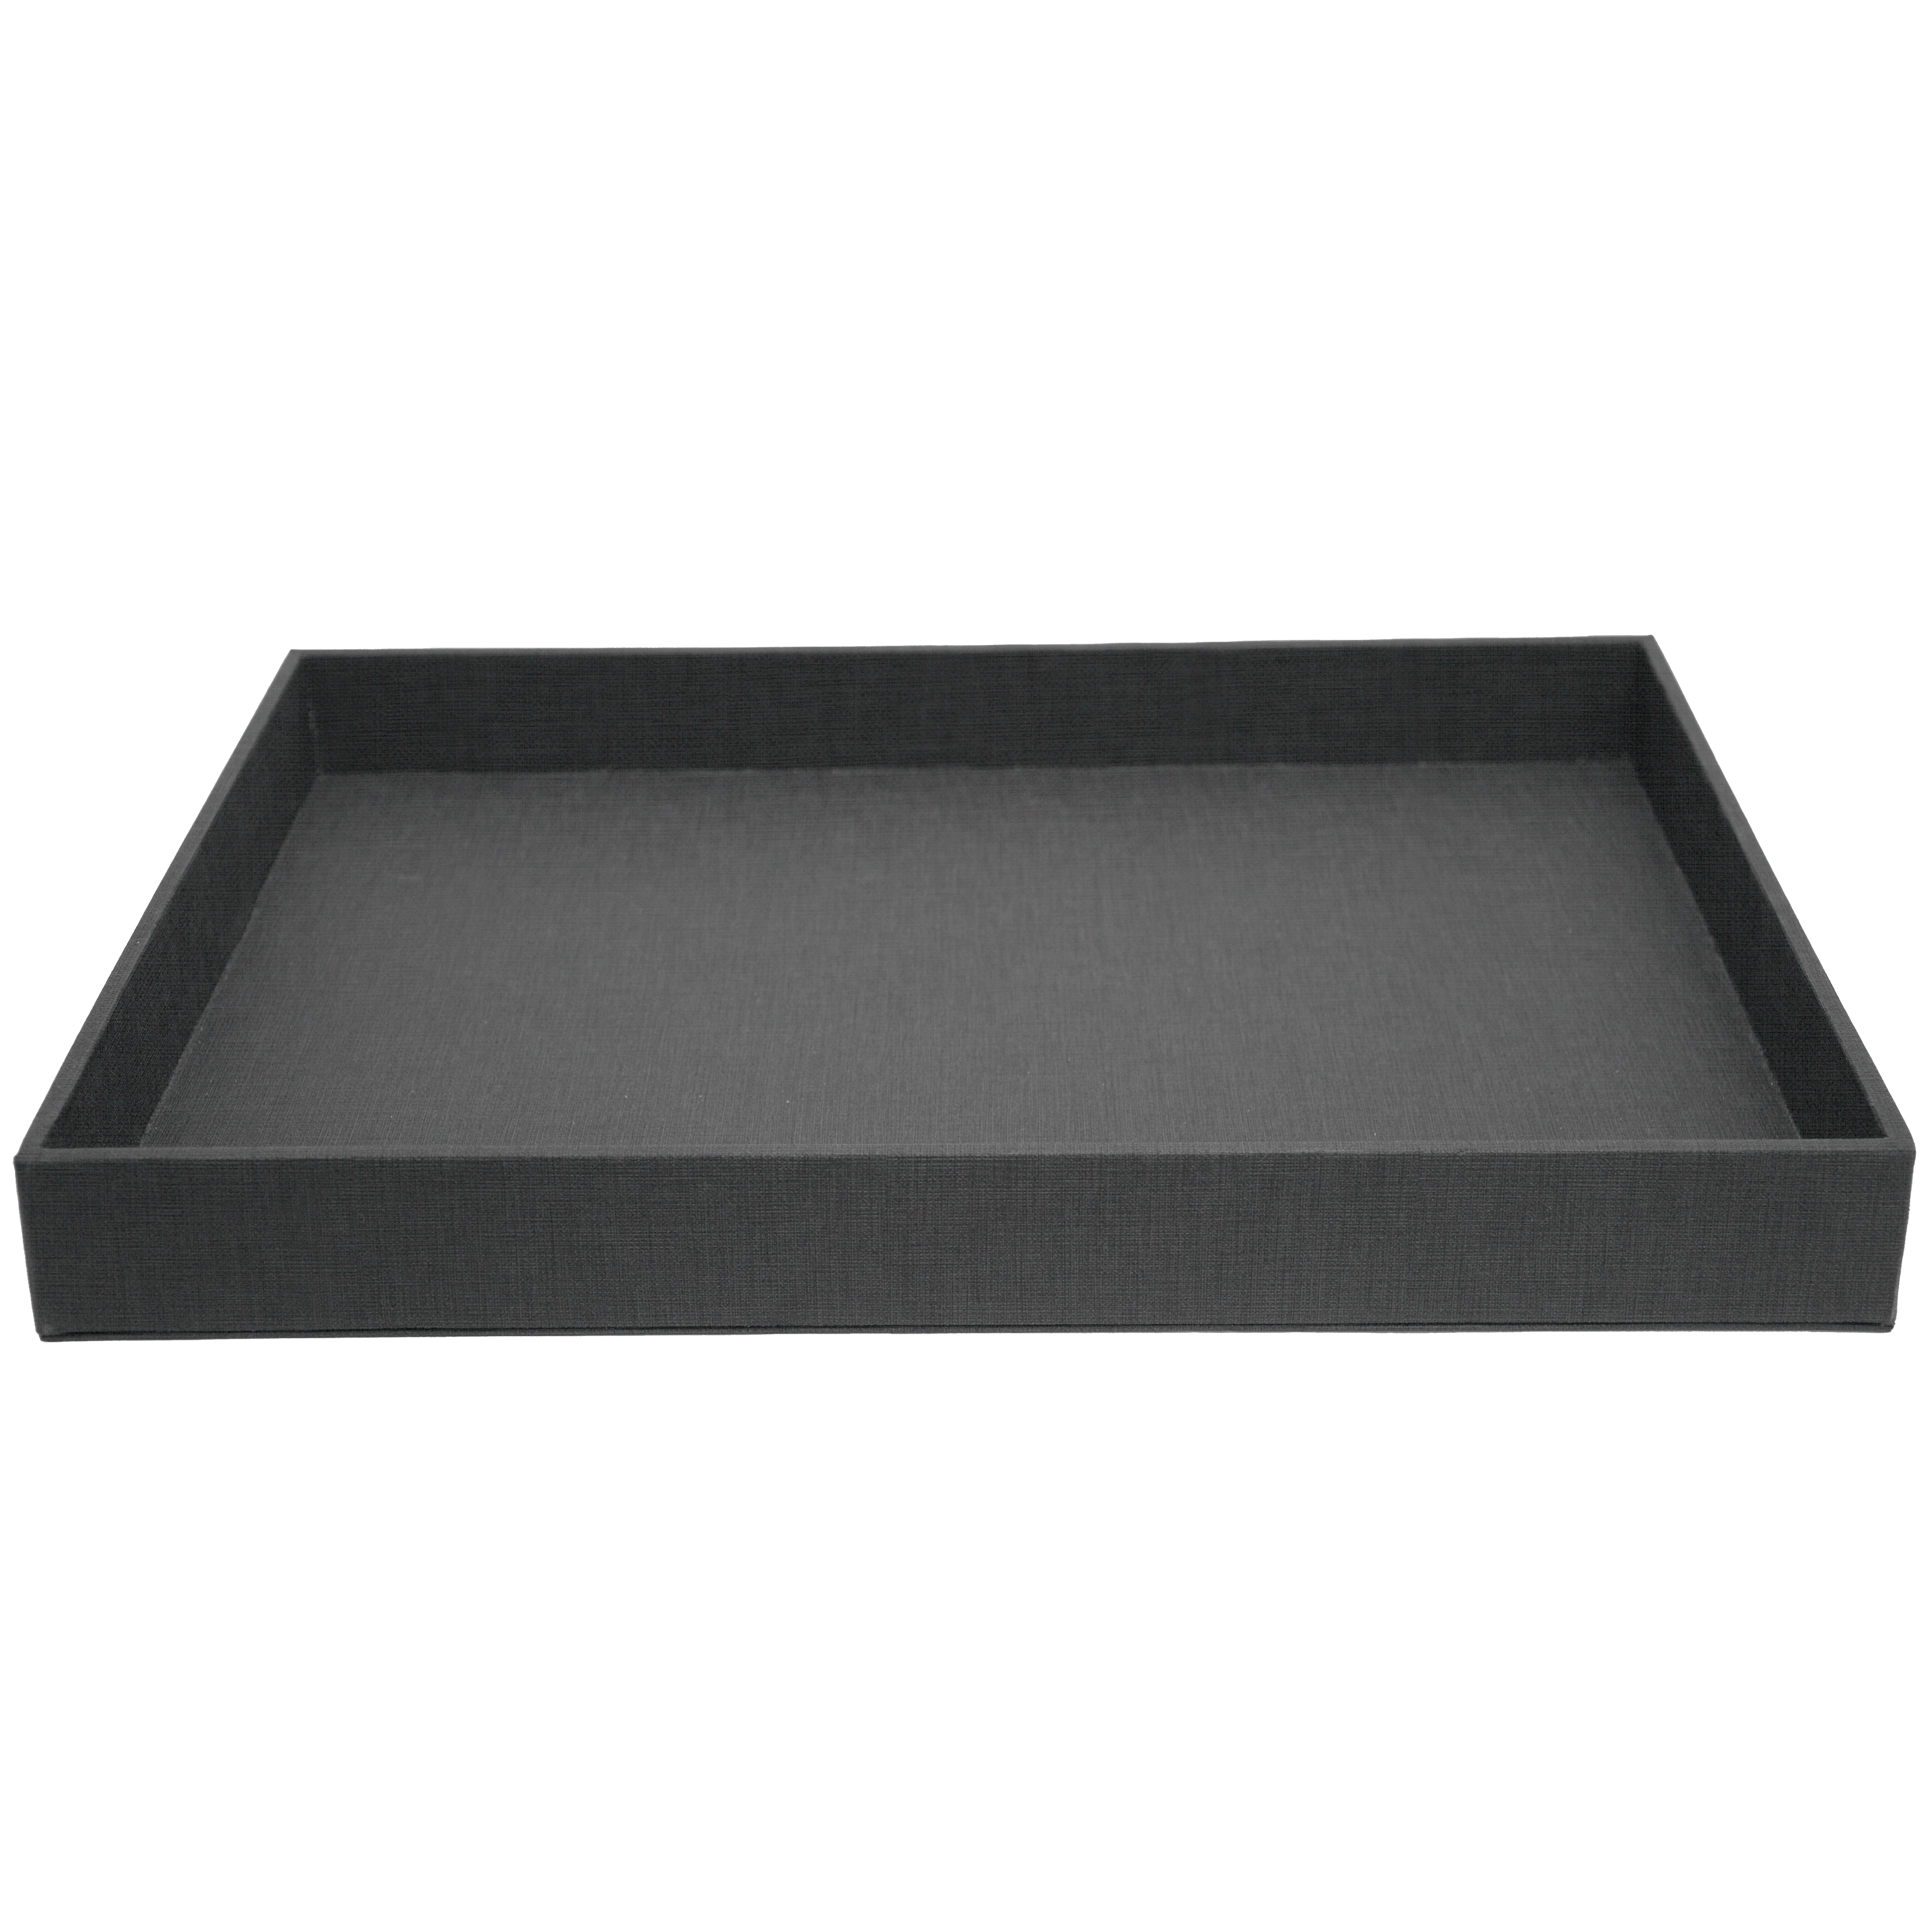 Tablett | La Carte Holz | Ecoleder grau FILL 26A01 30x40x h 4 cm